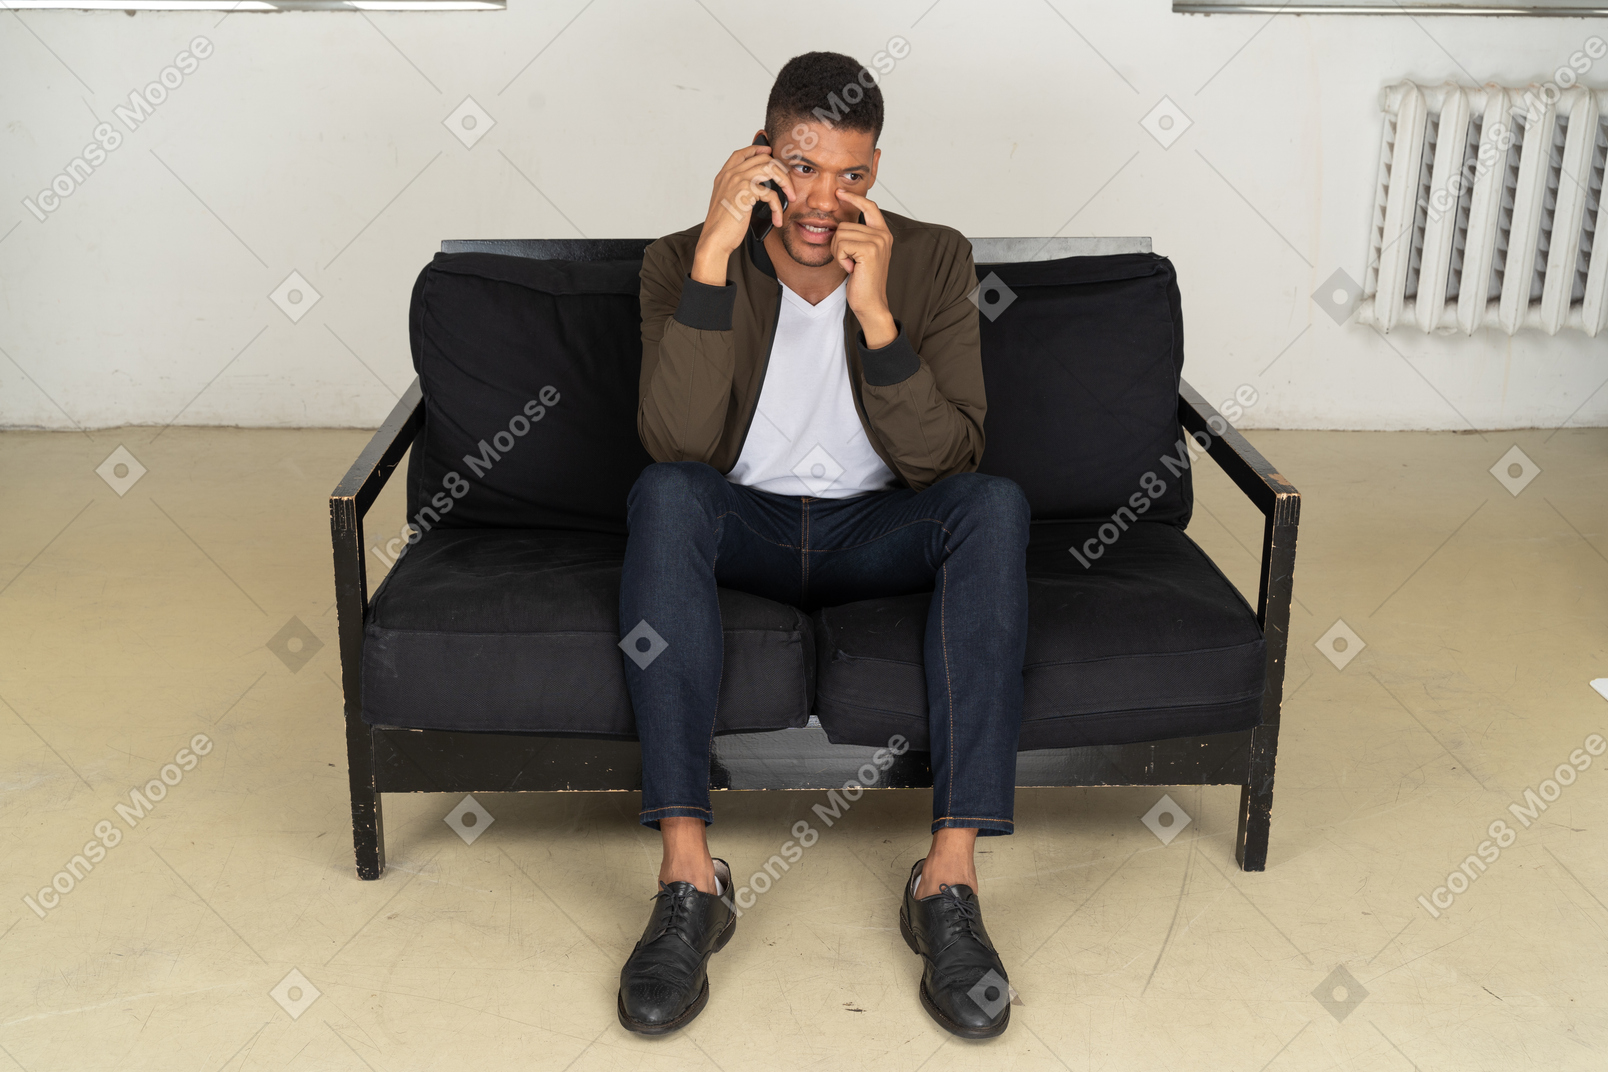 Vorderansicht eines verwirrten jungen mannes, der auf einem sofa sitzt